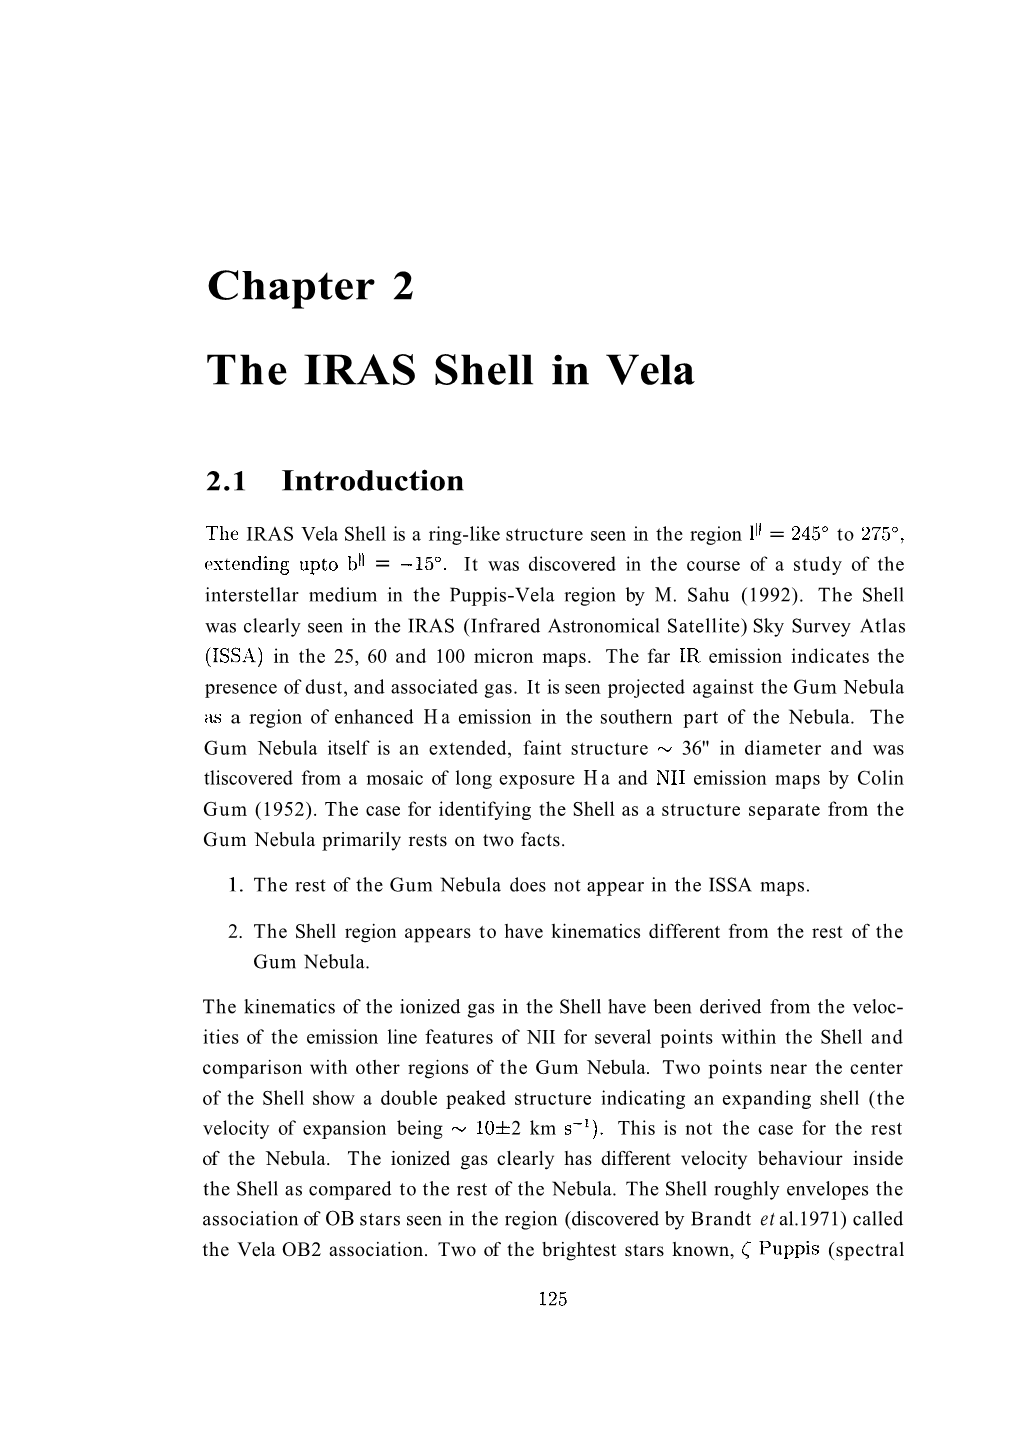 The IRAS Shell in Vela